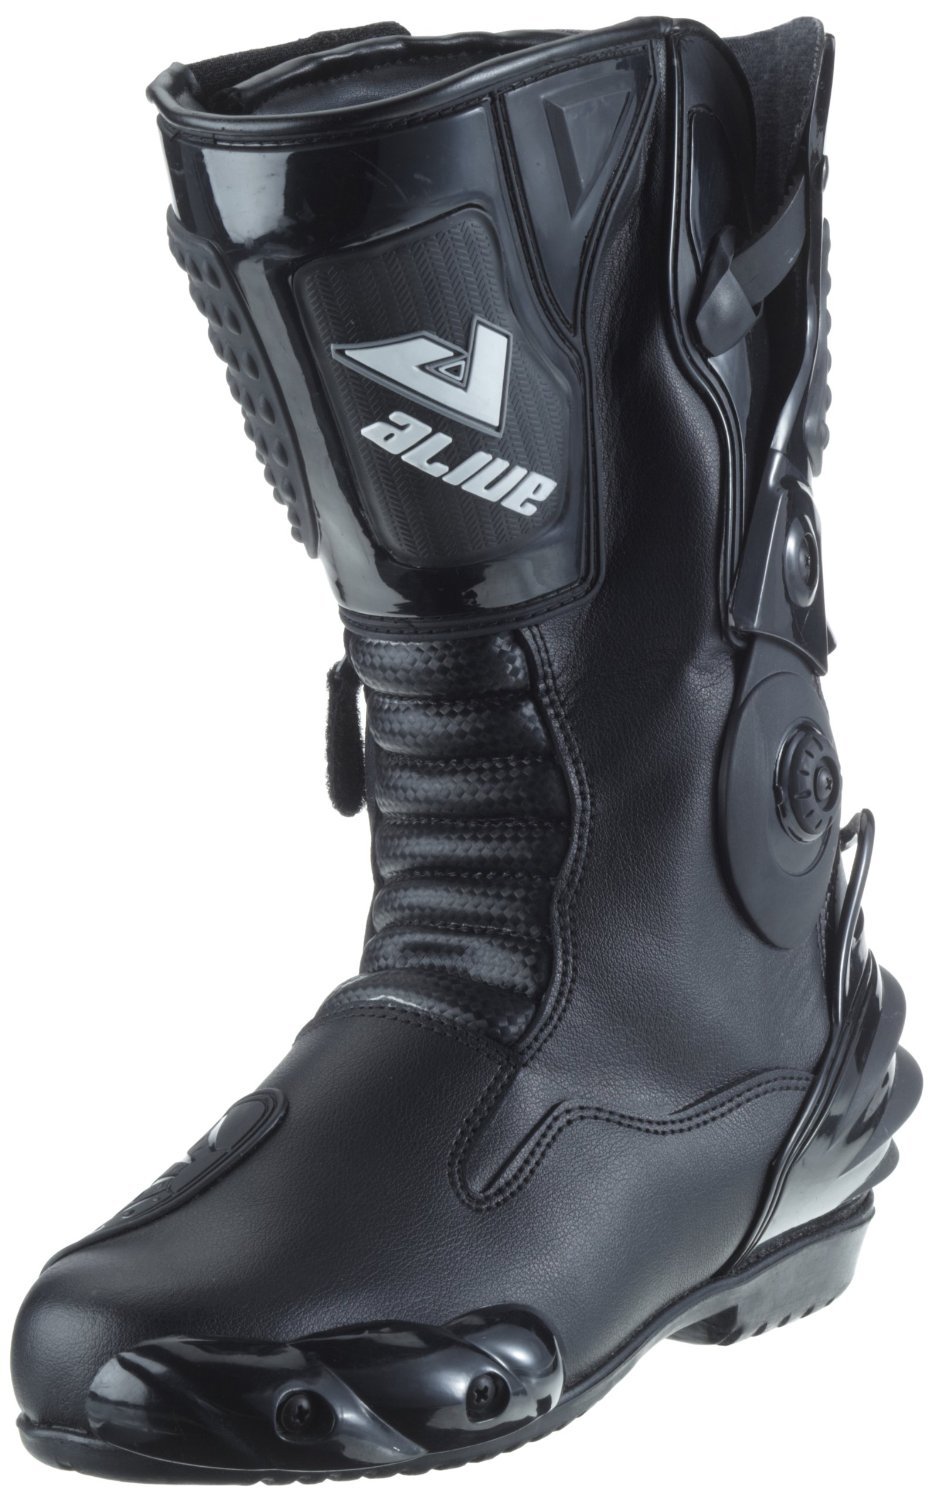 Protectwear TS-006-46 Motorradstiefel Racing aliue, Wasserabweisend aus schwarzem Leder mit aufgesetzten Hartschalenprotektoren, Größe 46, Schwarz von protectWEAR